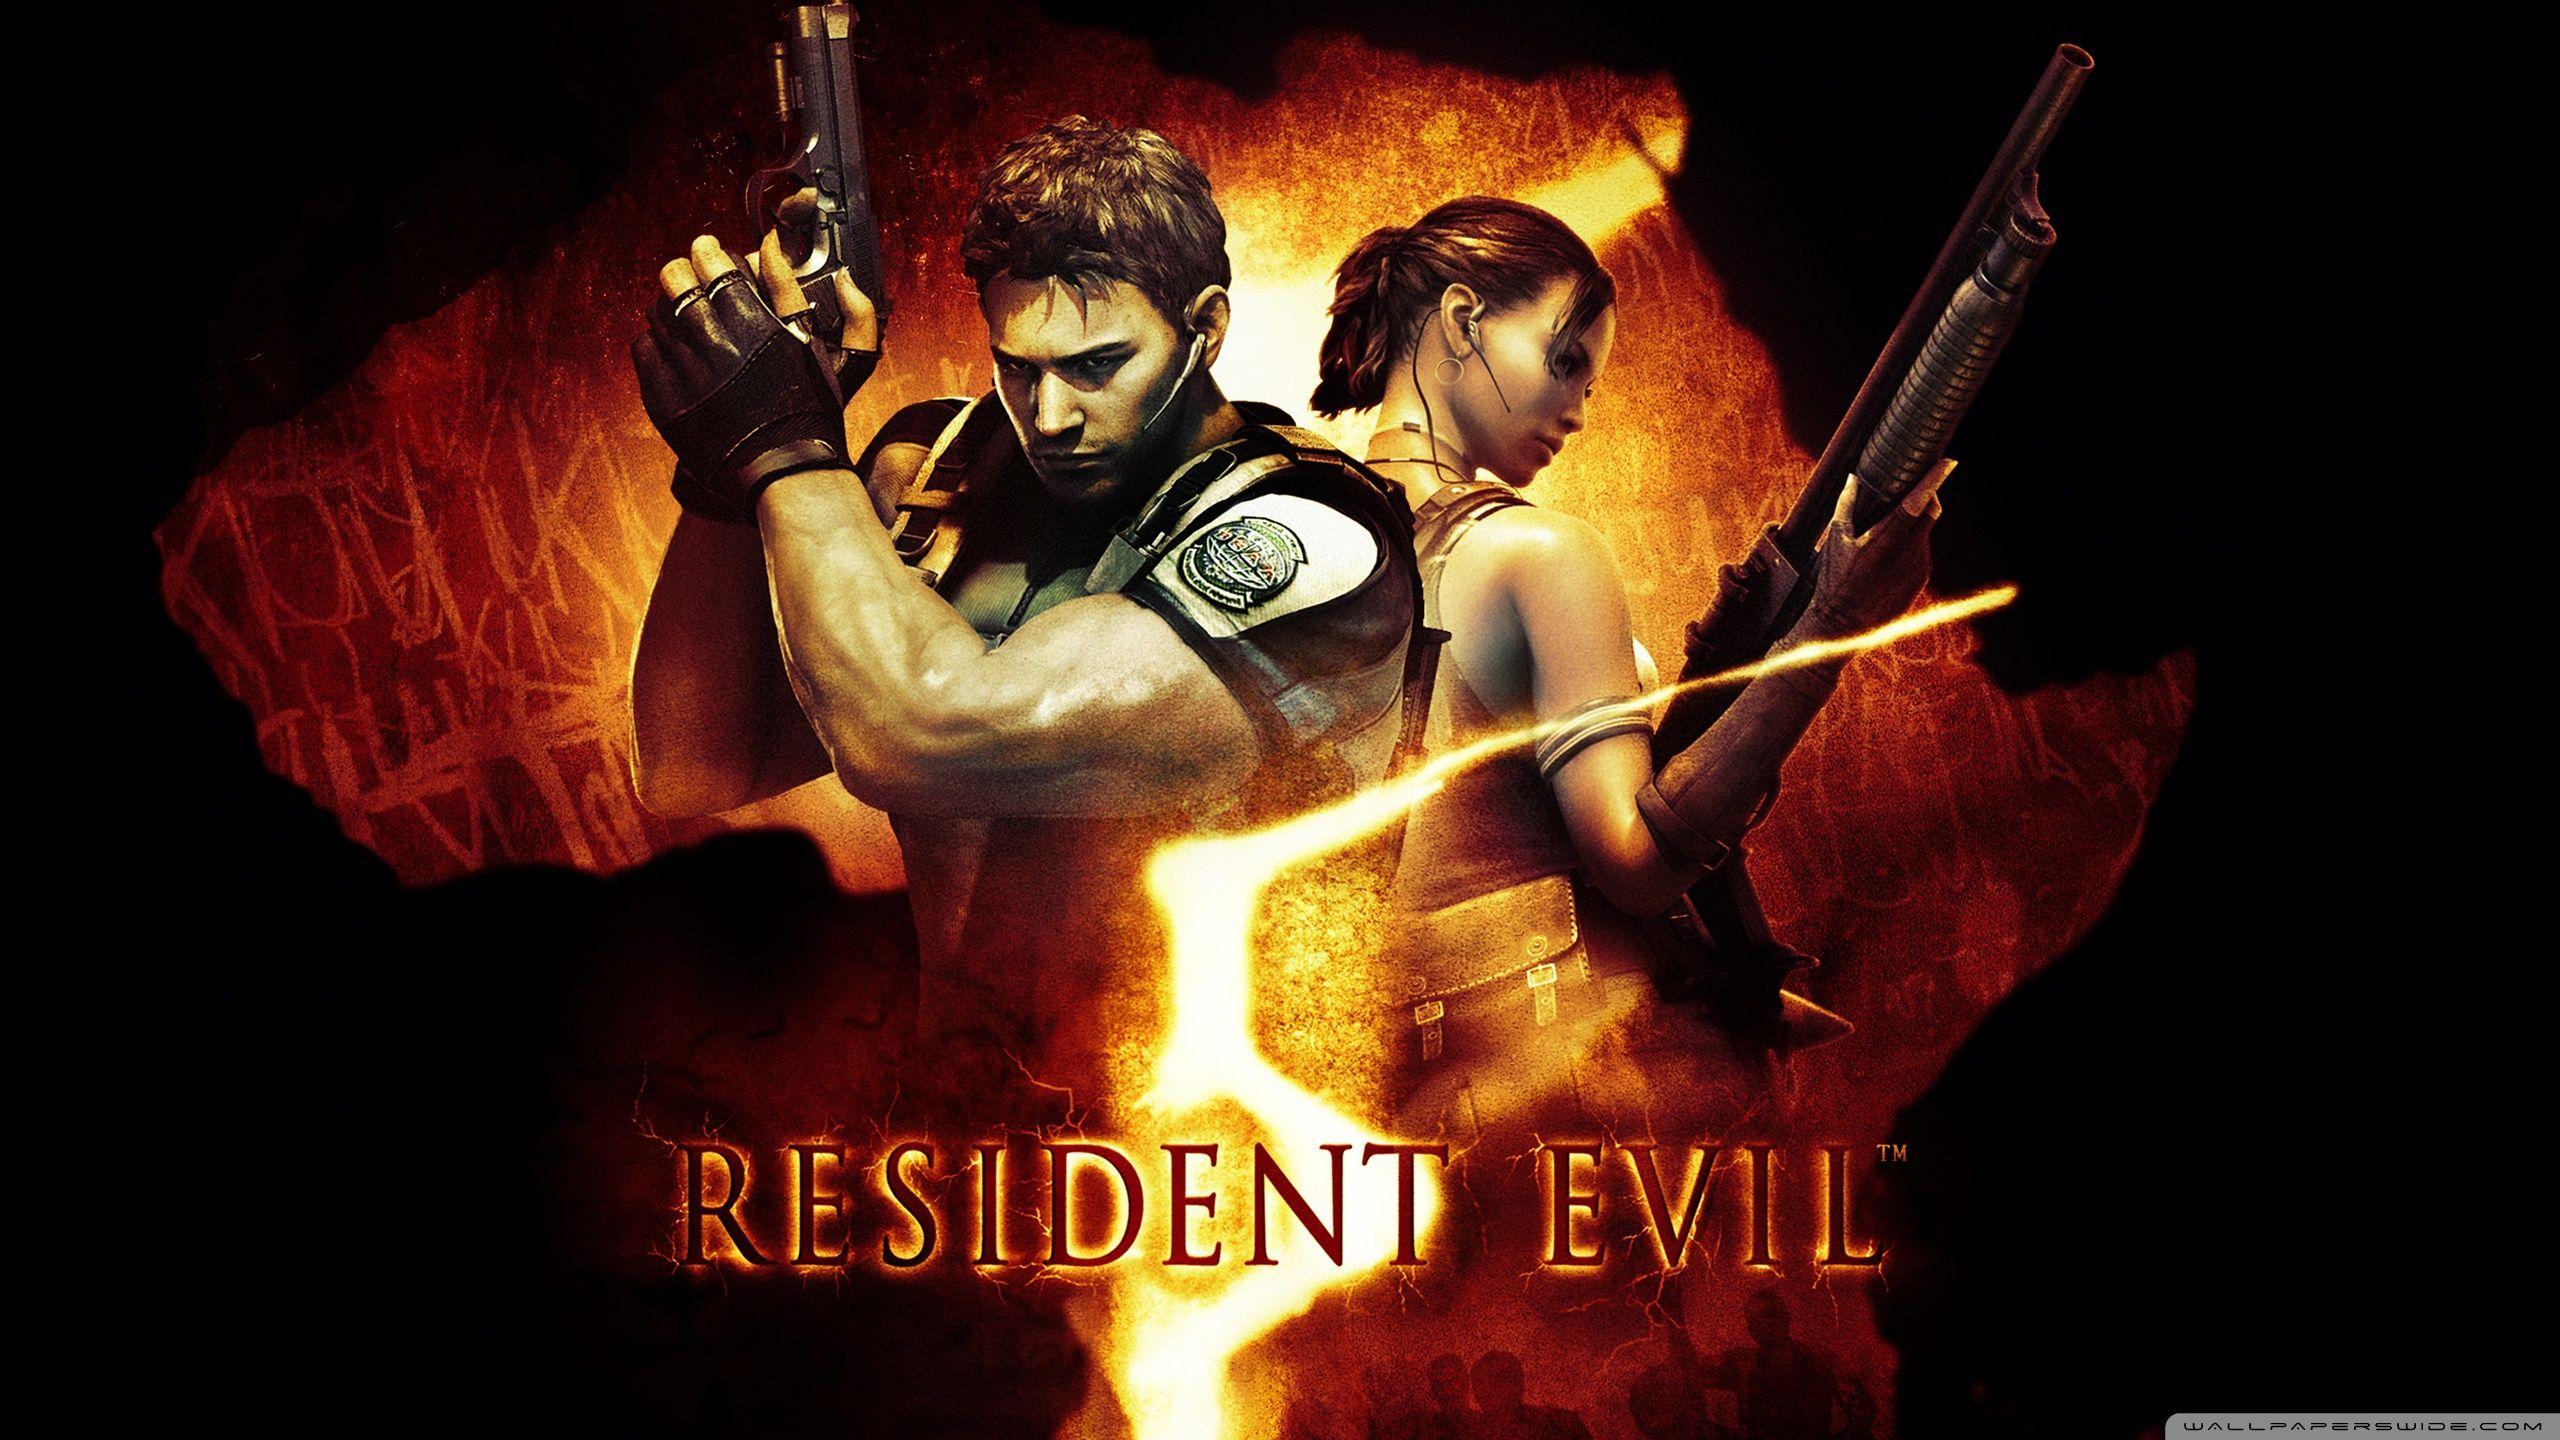 Resident Evil 5 Wallpapers